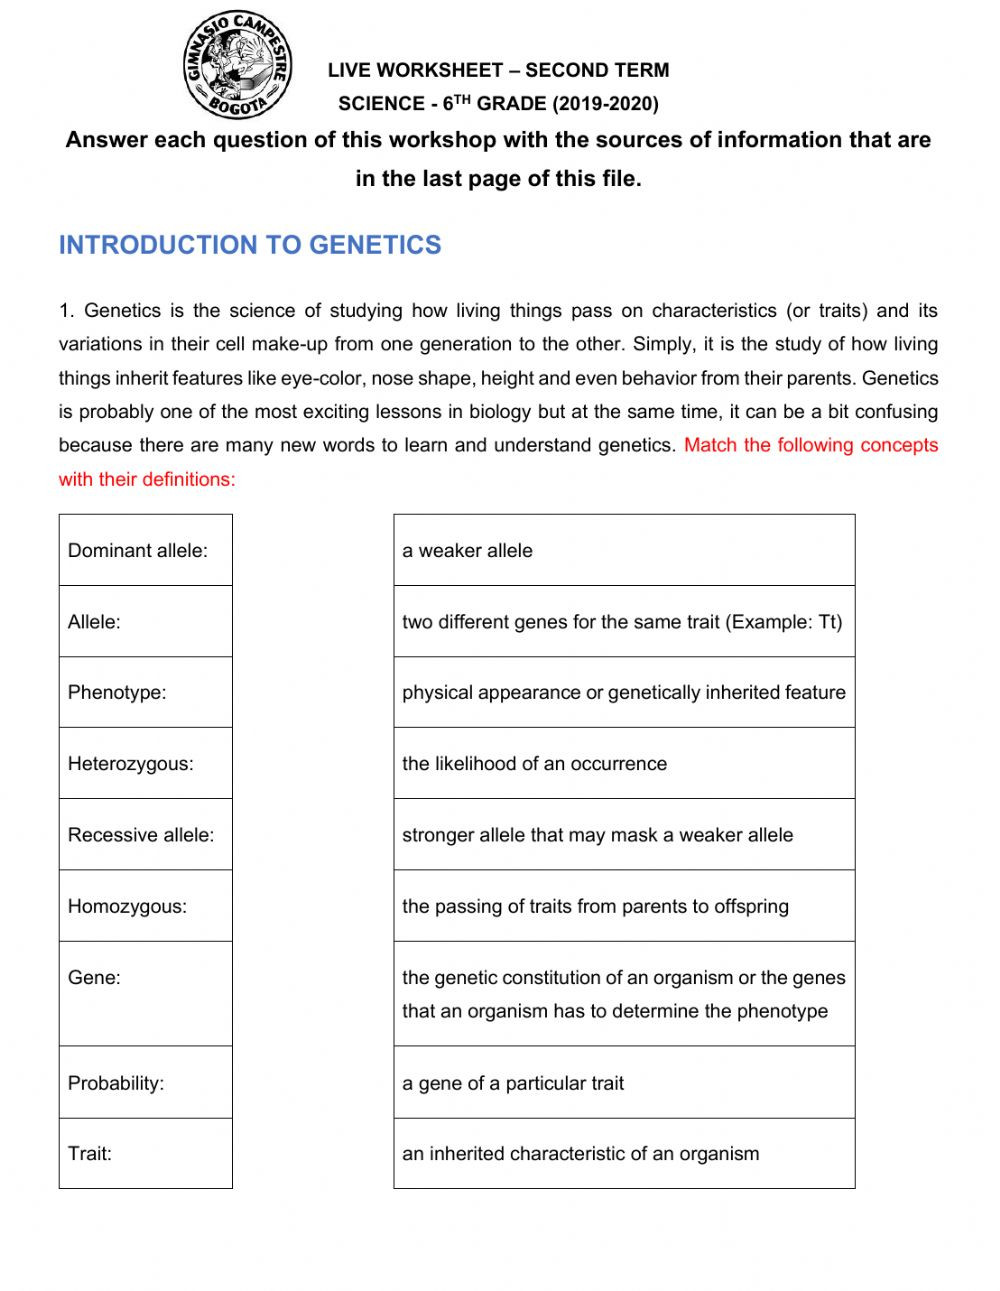 Mendelian Genetics Worksheet Answer Key Genetics Mendelian Genetics Interactive Worksheet